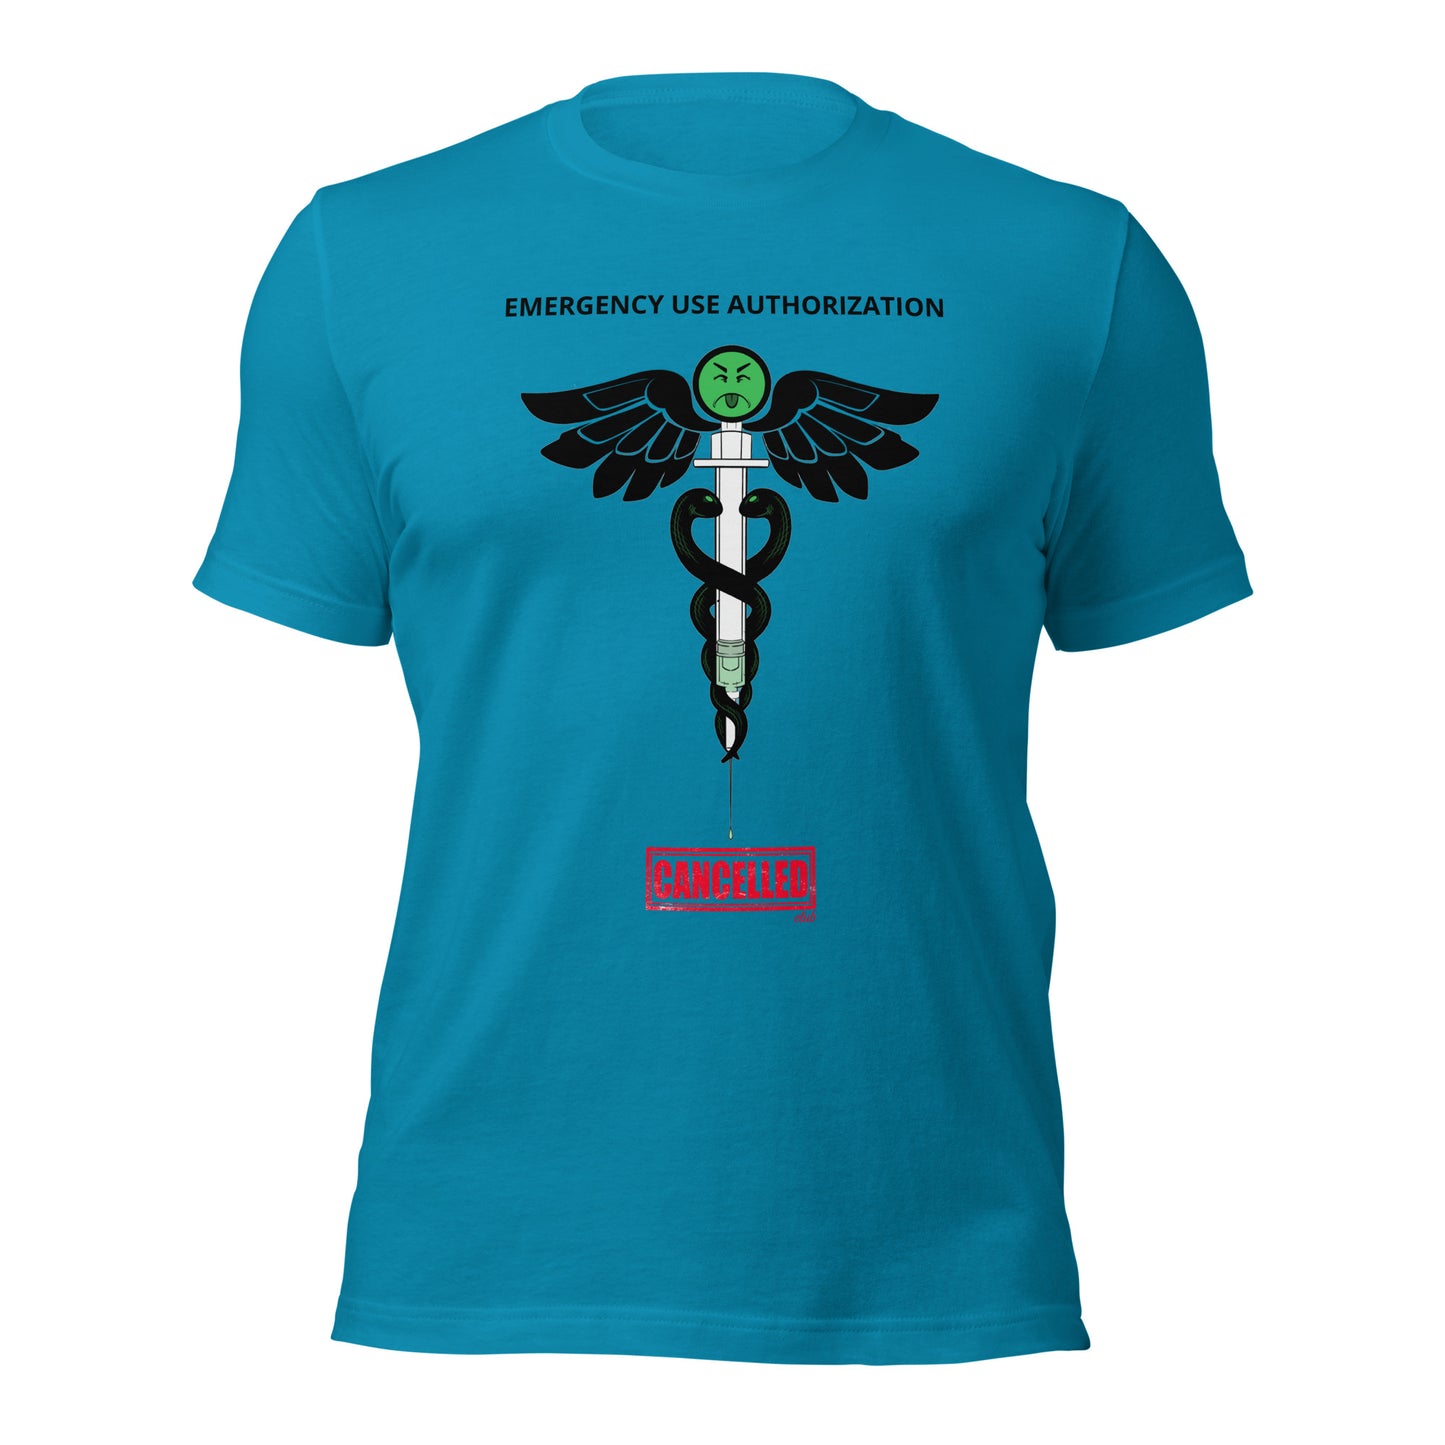 Unisex t-shirt - Emergency Use Authorization